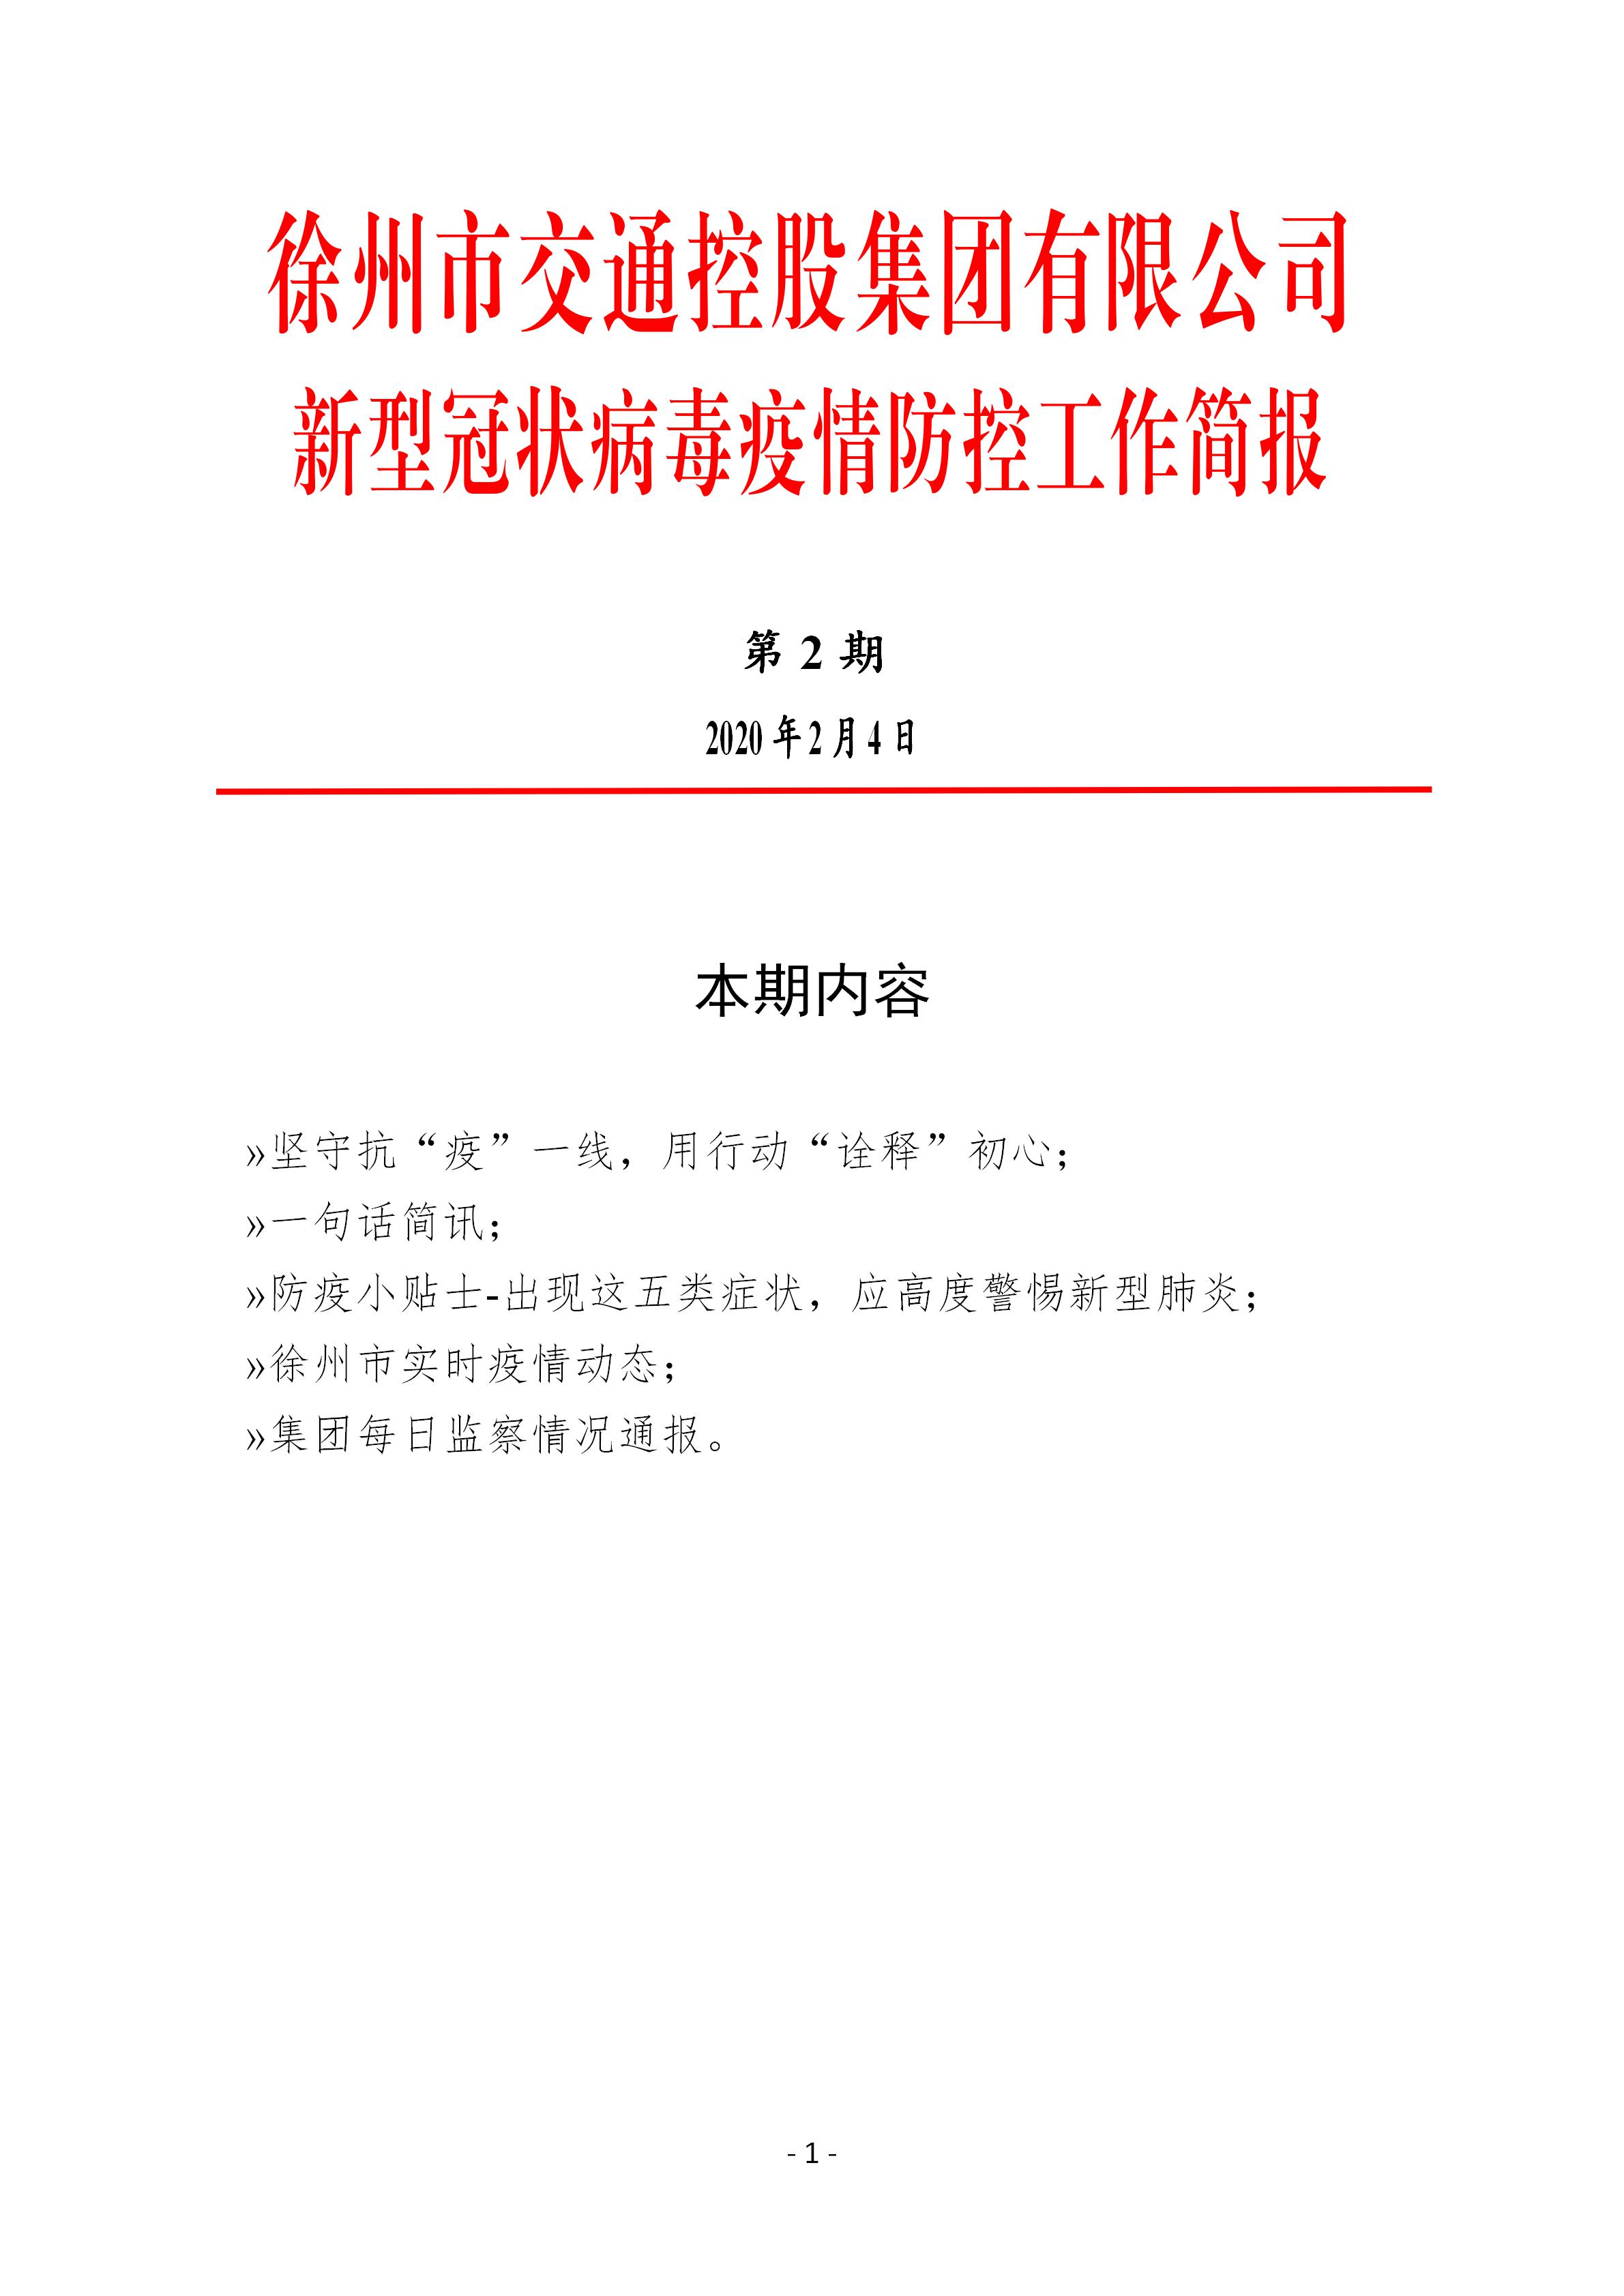 （第二期2.4）徐州市交通控股集团新型冠状病毒防疫防控工作简报